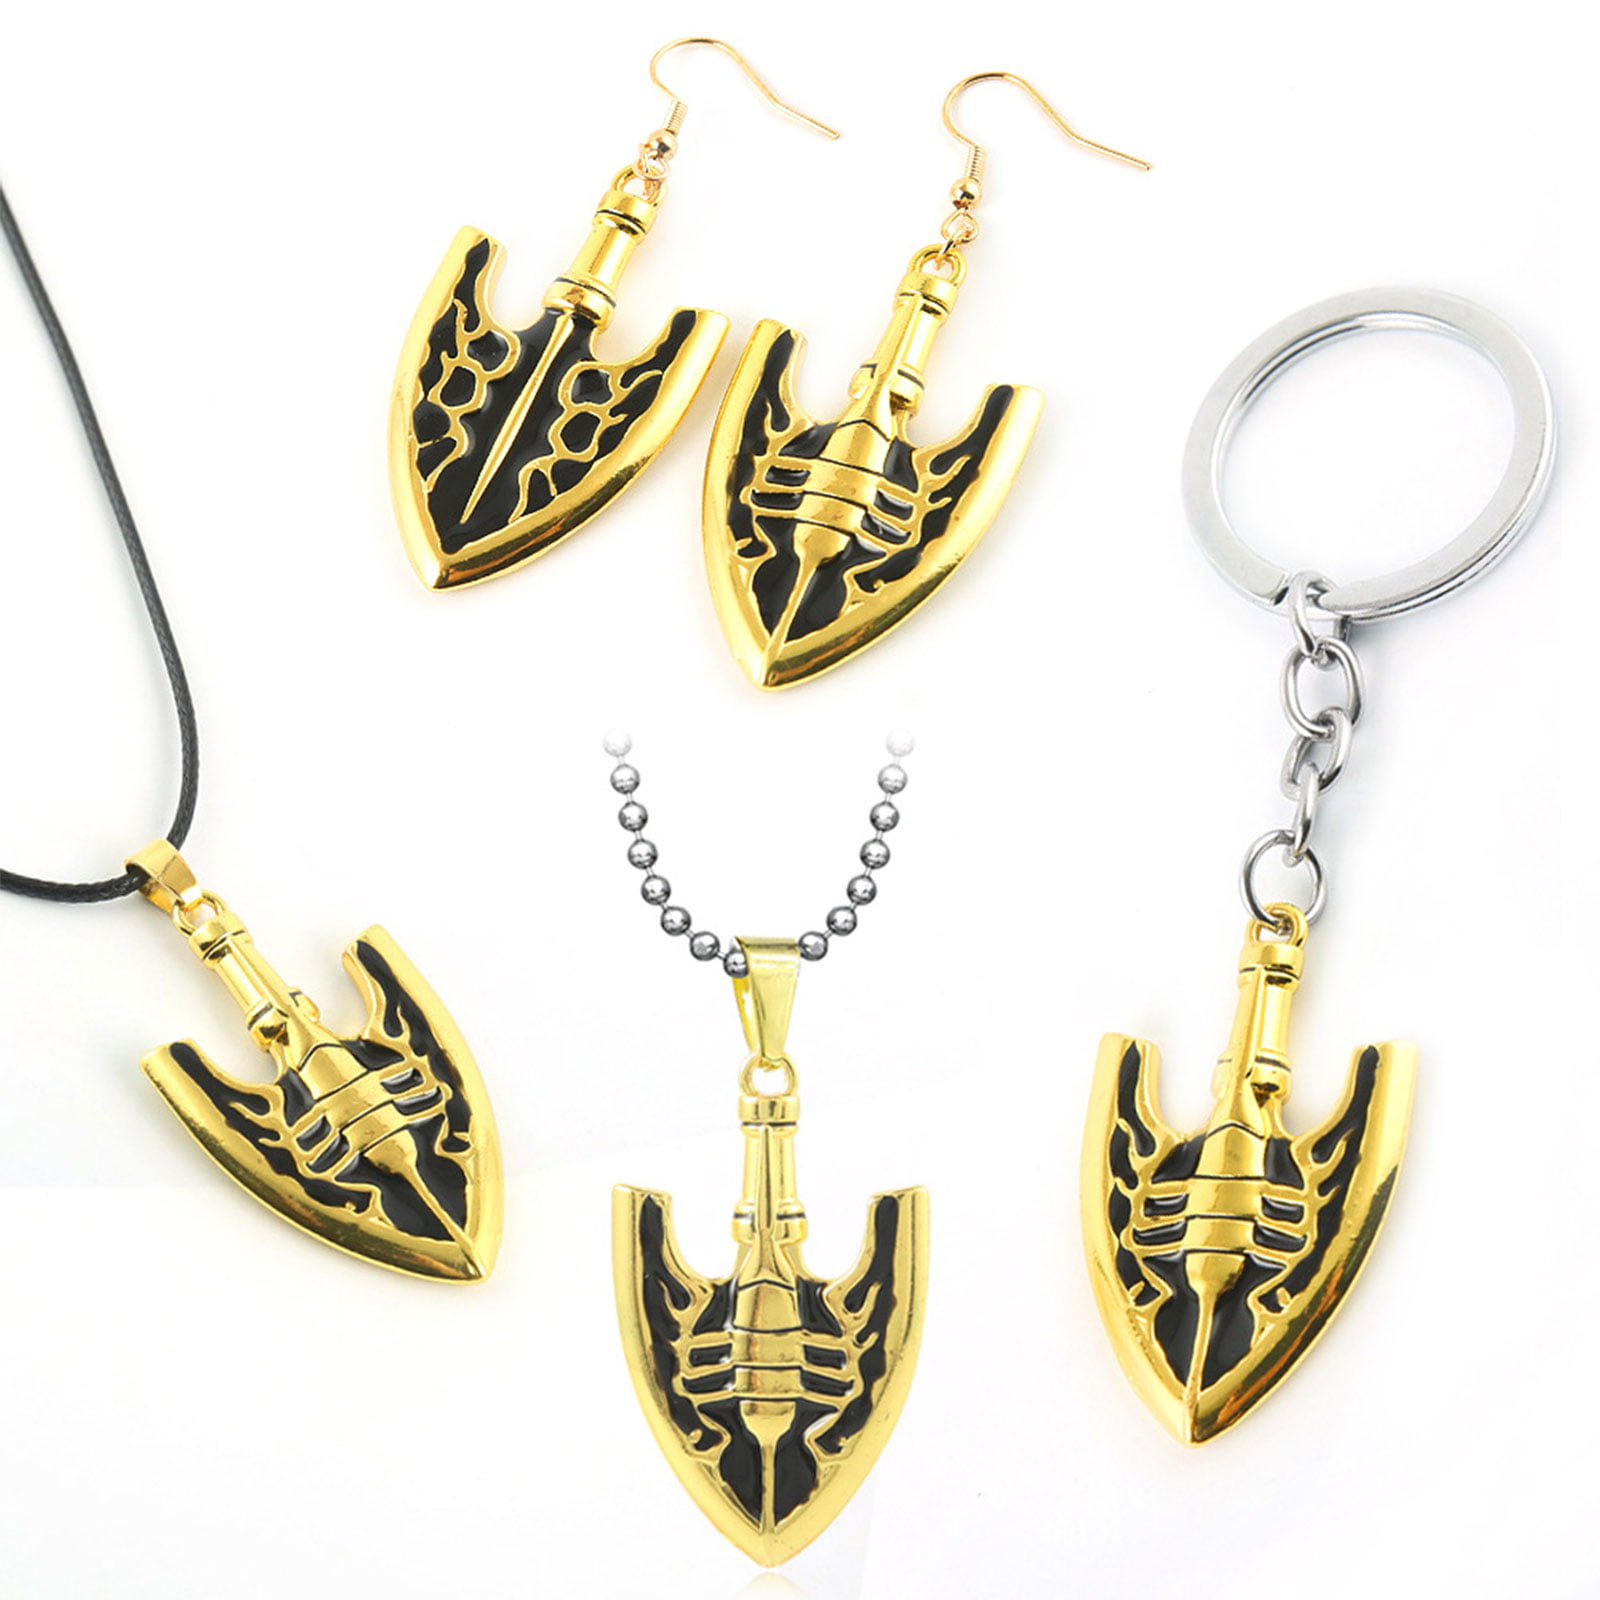 jojo bizarre adventure golden wind necklace jewelry - jojo stand arrow  requiem arrow pendant with gift box, professional quality, for boys girls  (jojo series 3) 2023 - US $7.49